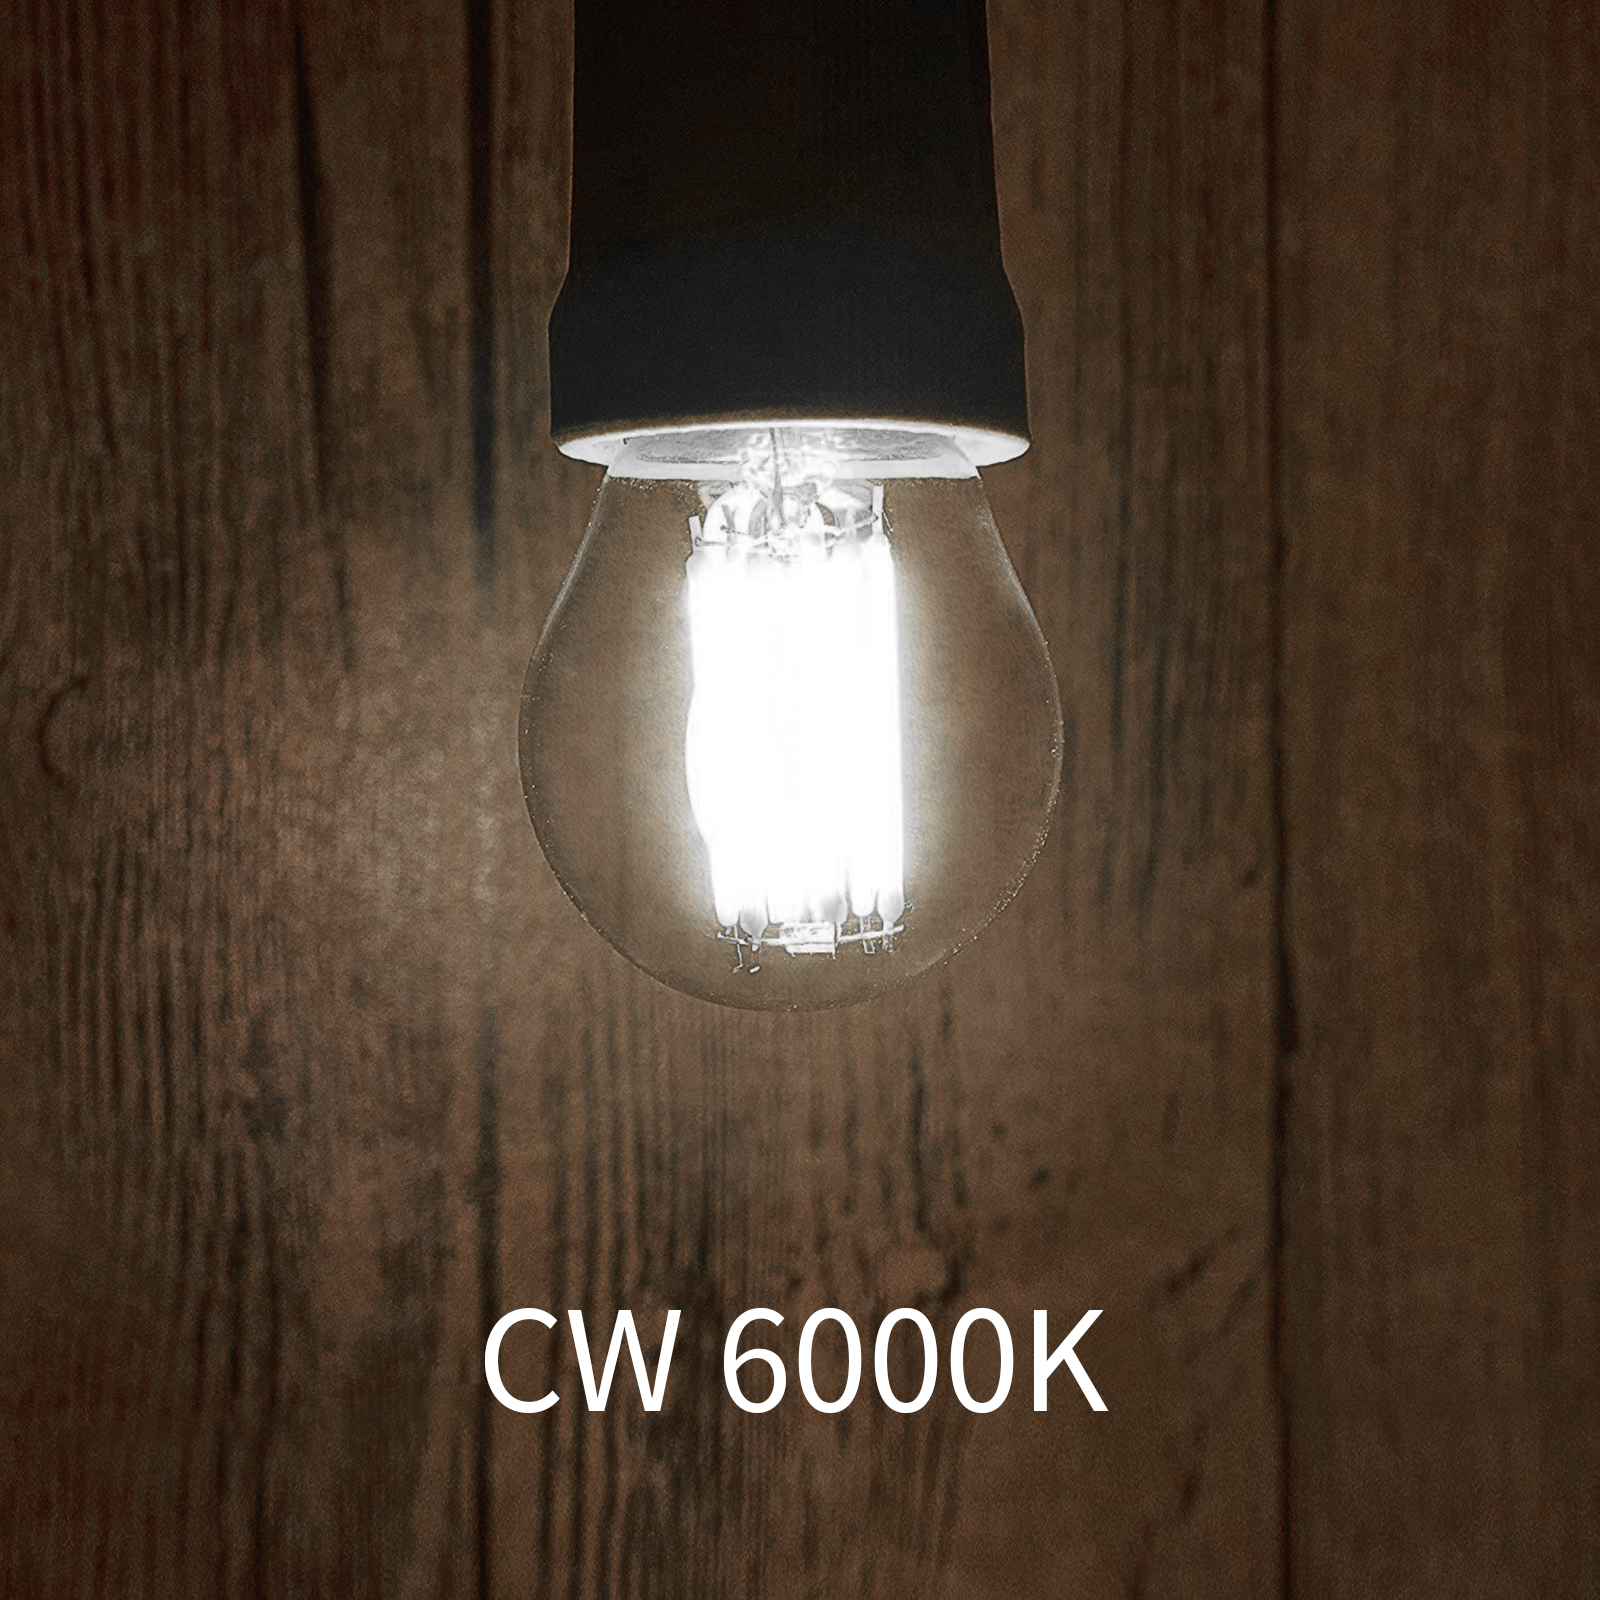 4W G45 E26/E27 LED Vintage Light Bulb